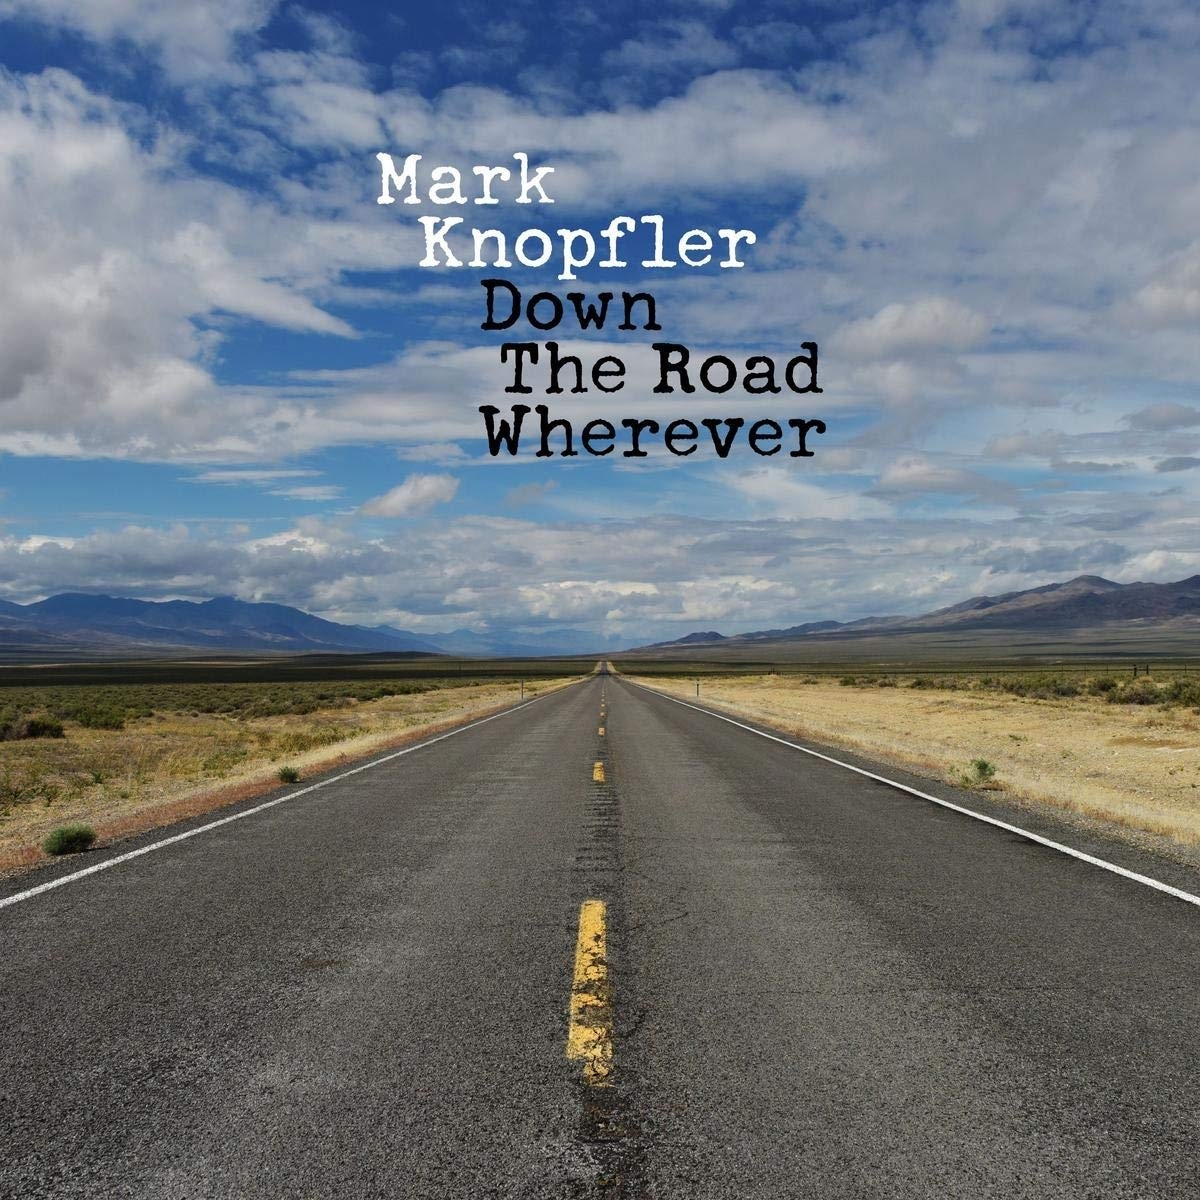 pop 01 19 Mark Knopfler